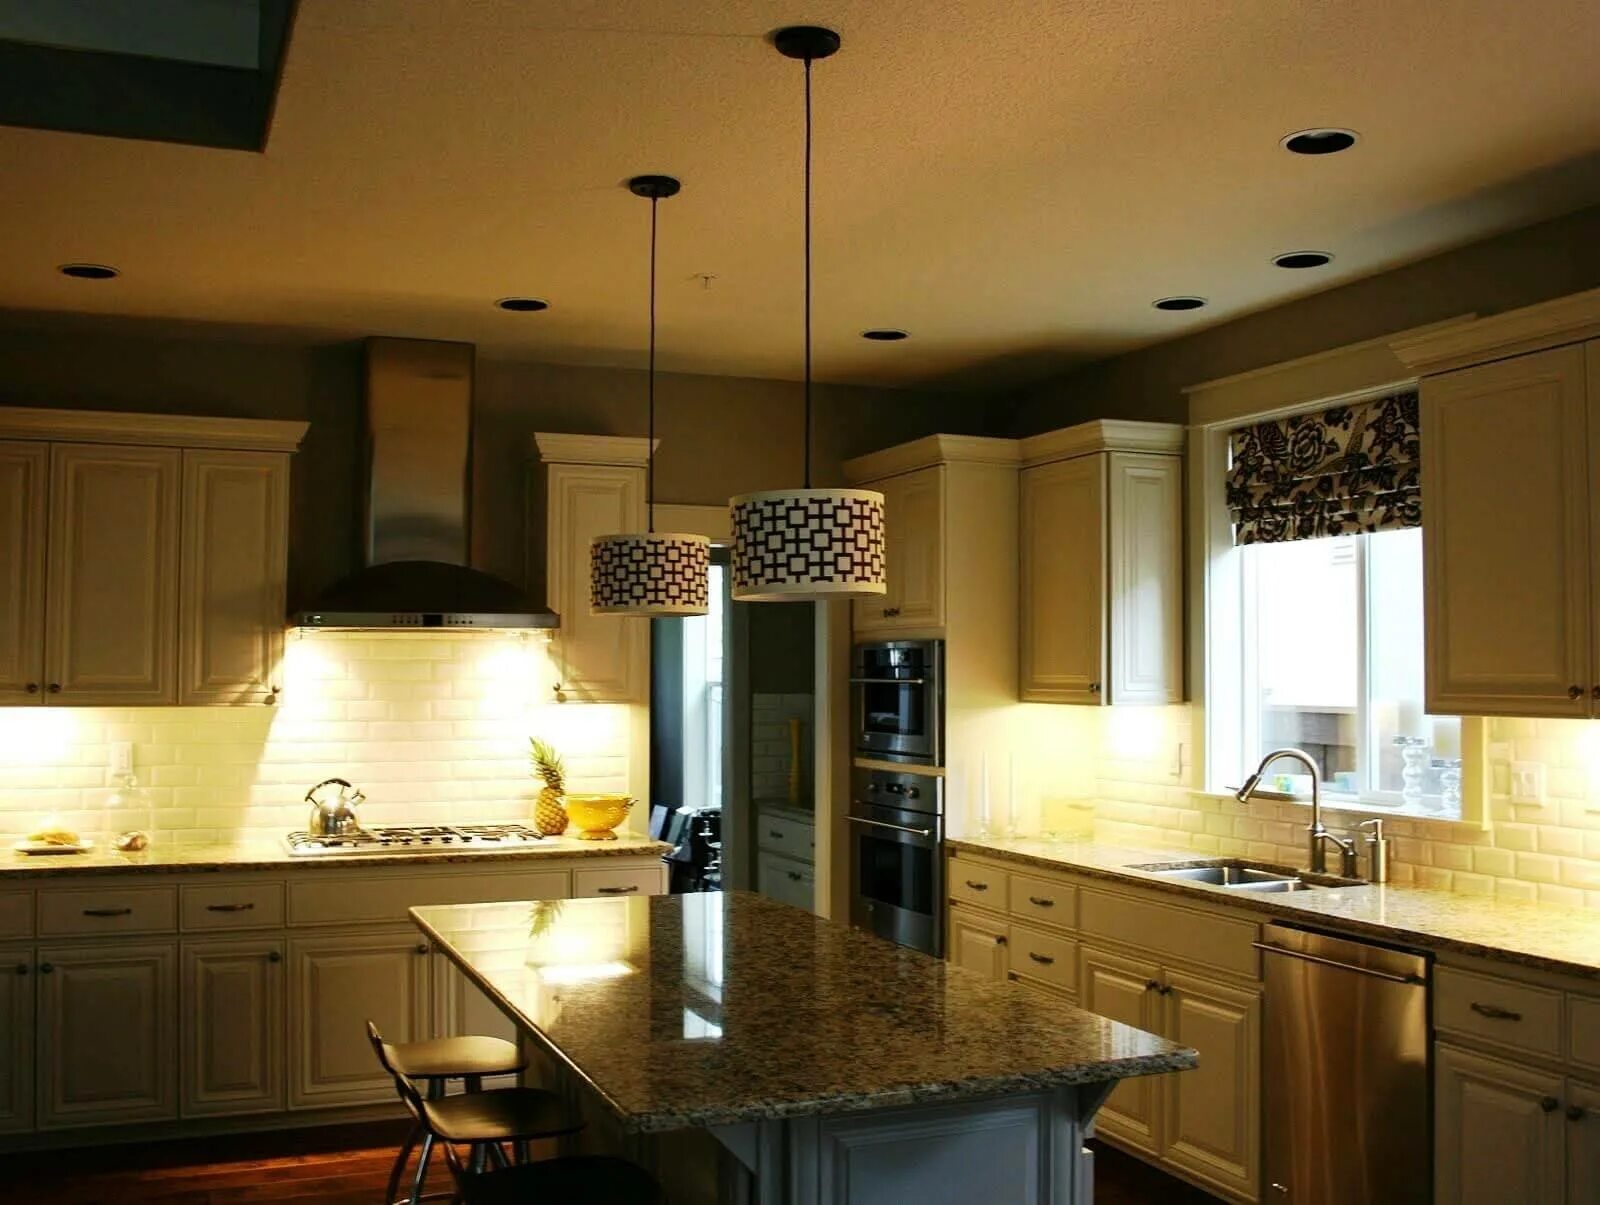 Кухня потолок панели своими руками. Освещение на кухне. Красивое освещение на кухне. Современное освещение на кухне. Точечные светильники в интерьере кухни.